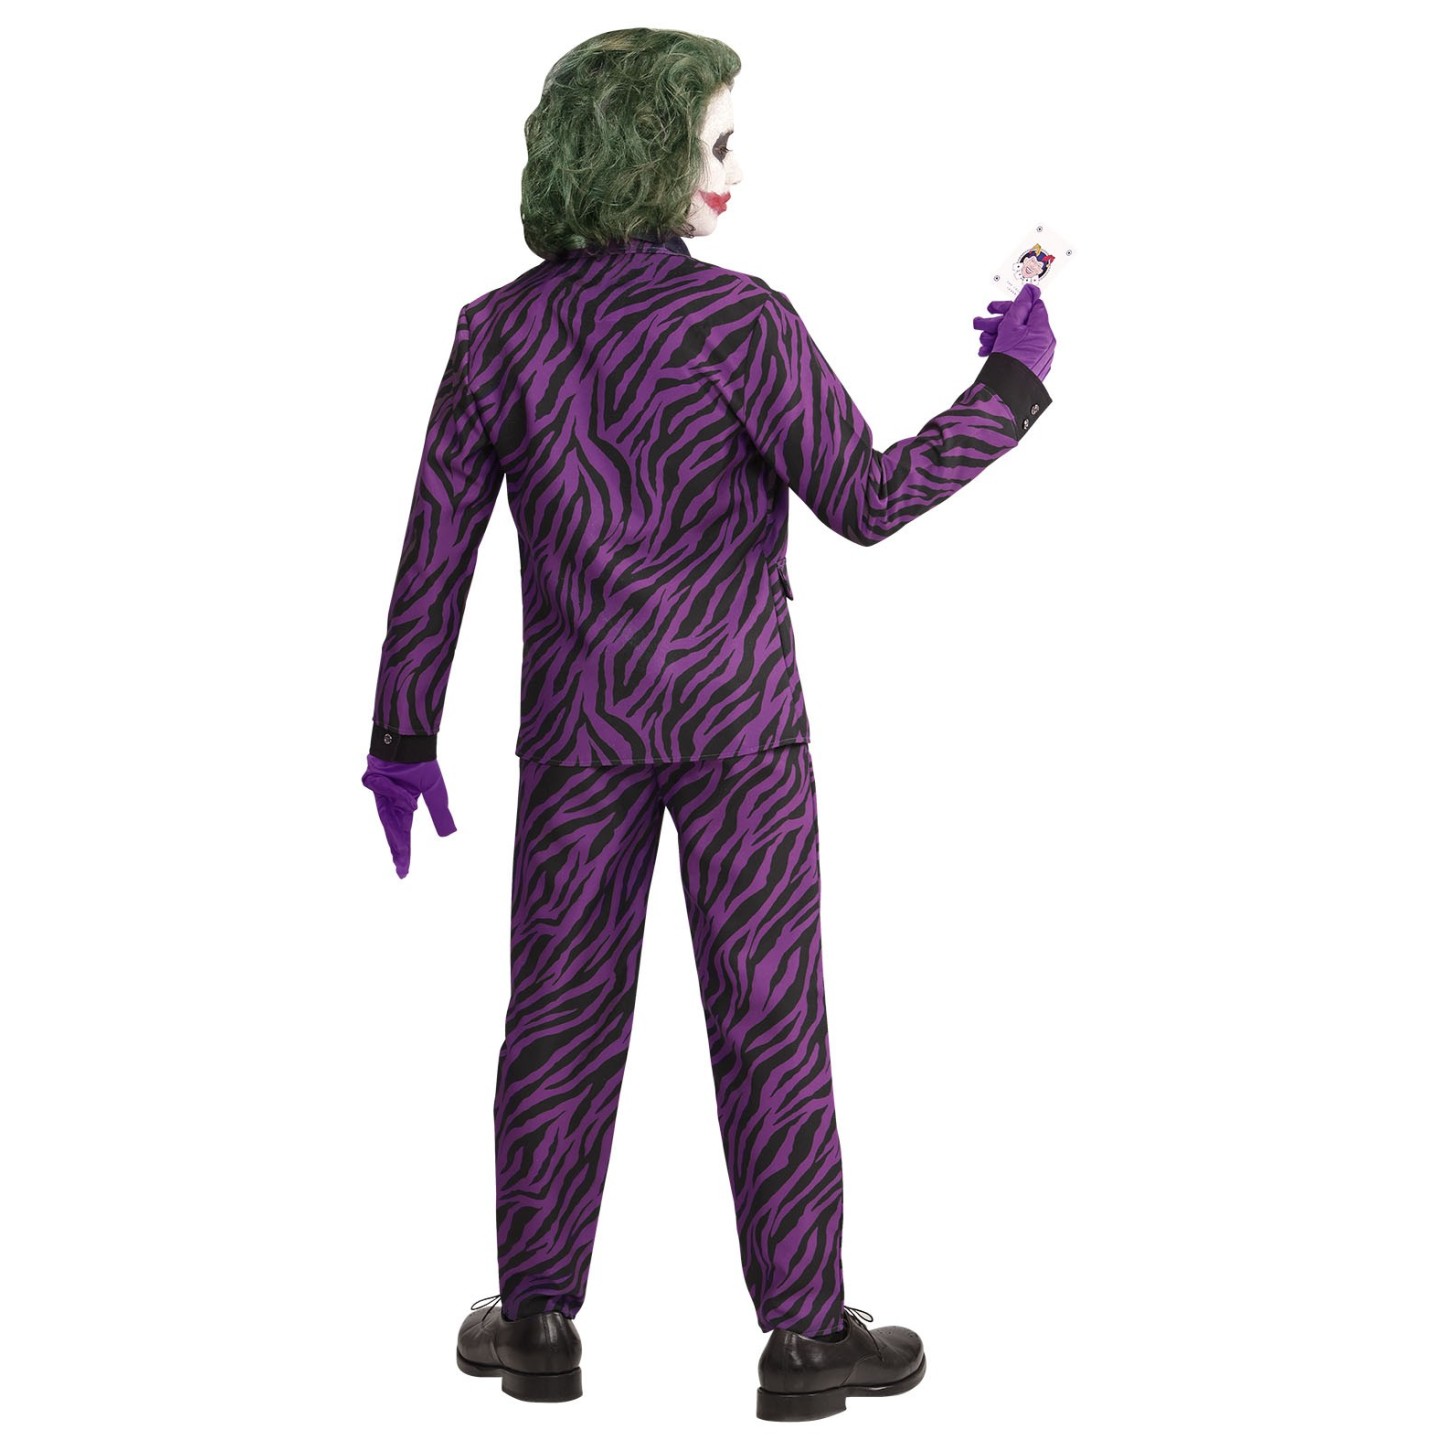 consumptie krijgen gastvrouw The Joker kostuum kind kopen ? | Jokershop.be - Verkleedkleding